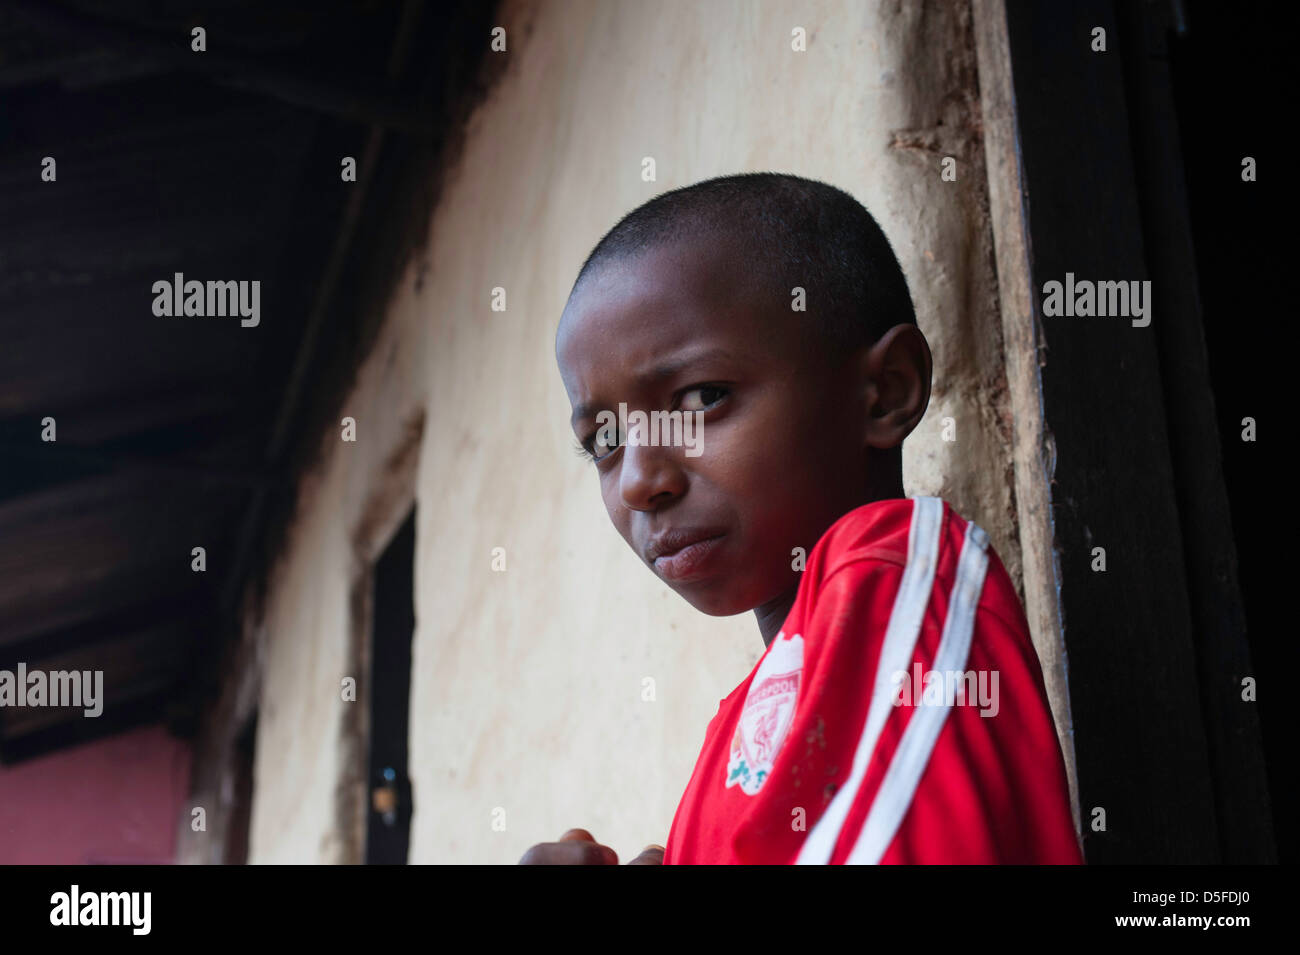 Young african boy near bamenda cameroon Stock Photo